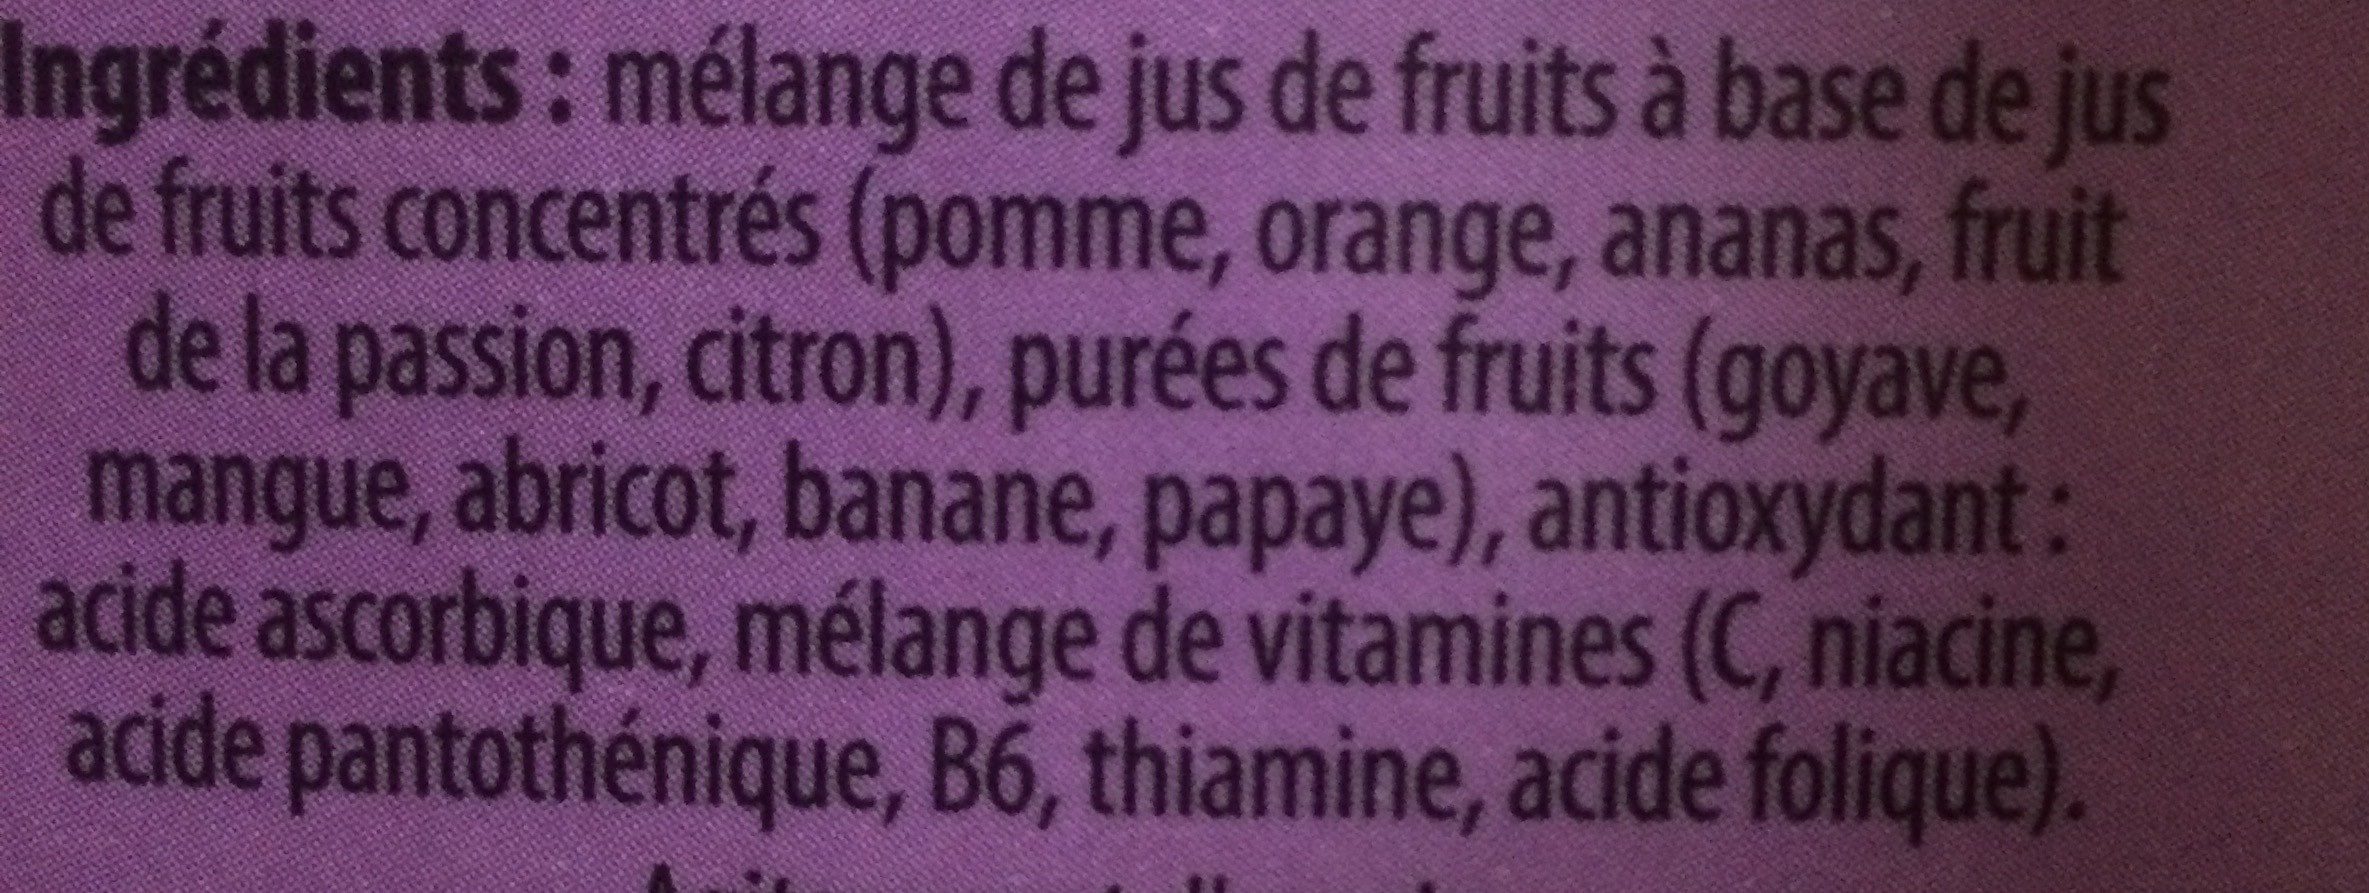 Jus multifruits - Ingrediënten - fr